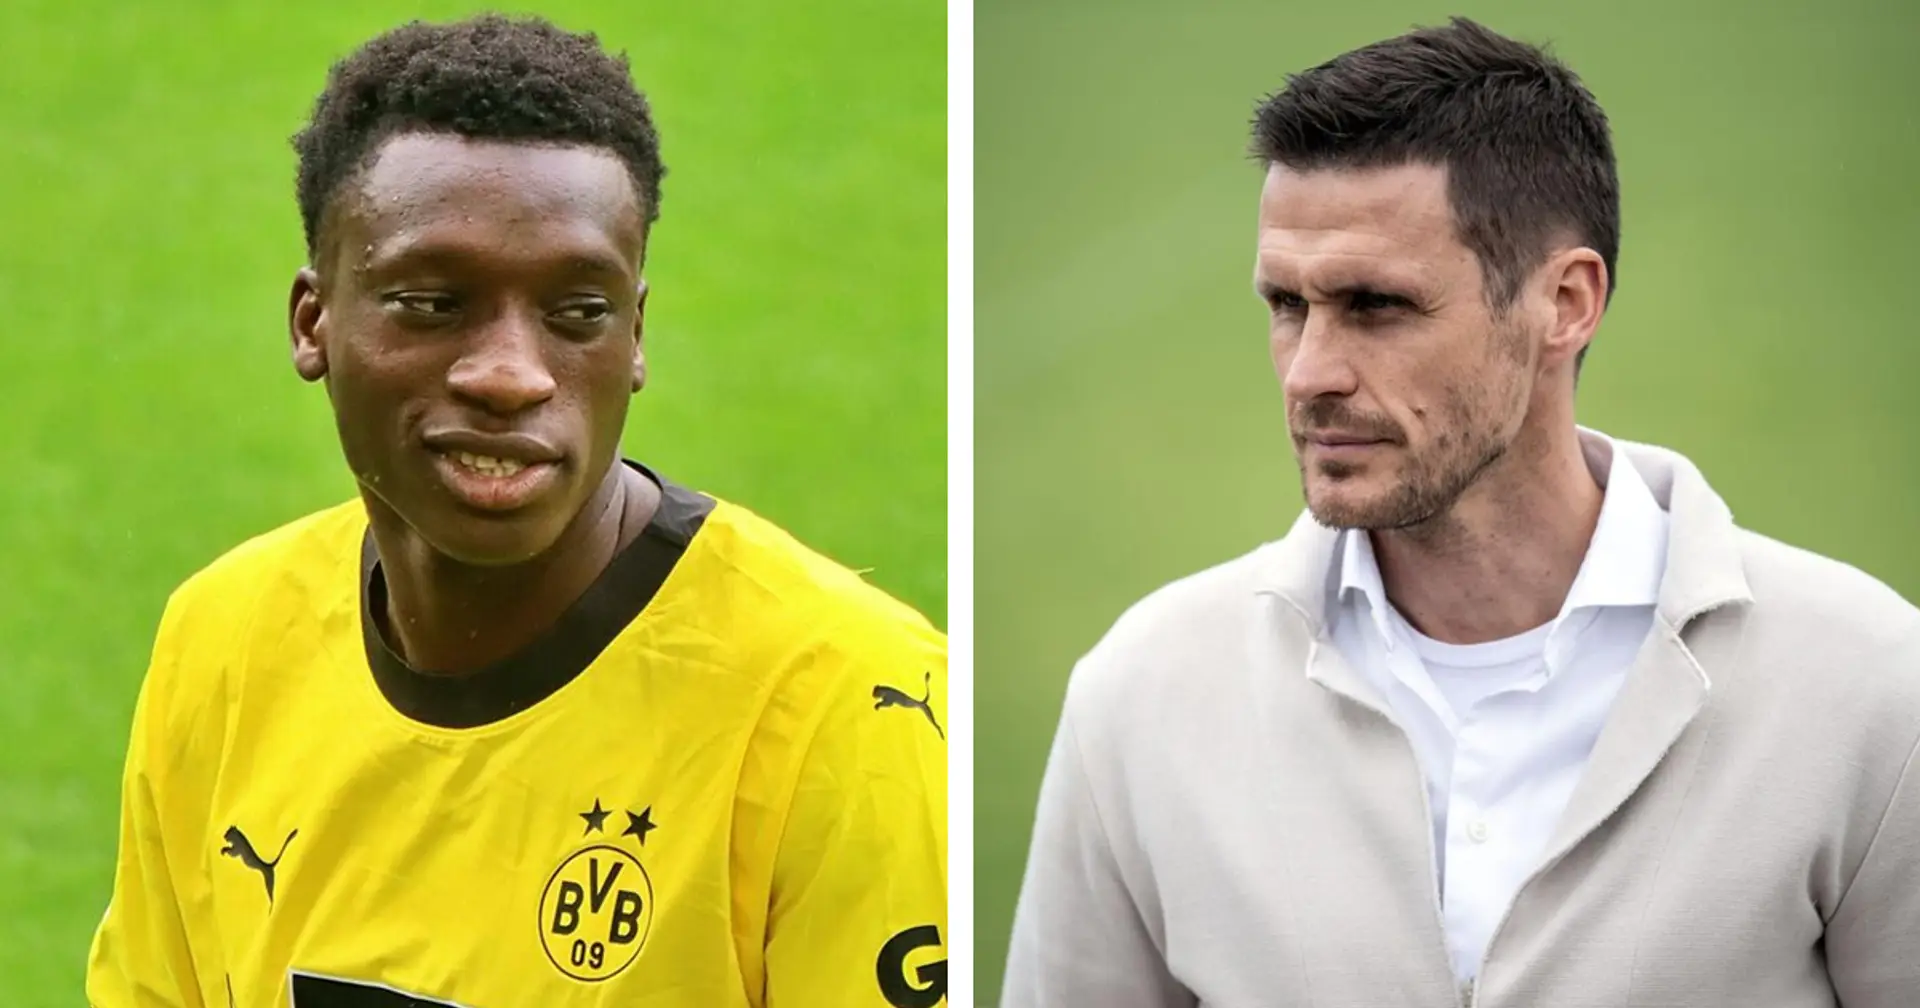 "Warum überhaupt abgeben?": BVB-Fan erwartet immer noch, dass Abdoulaye Kamara sich bei Dortmund durchsetzt